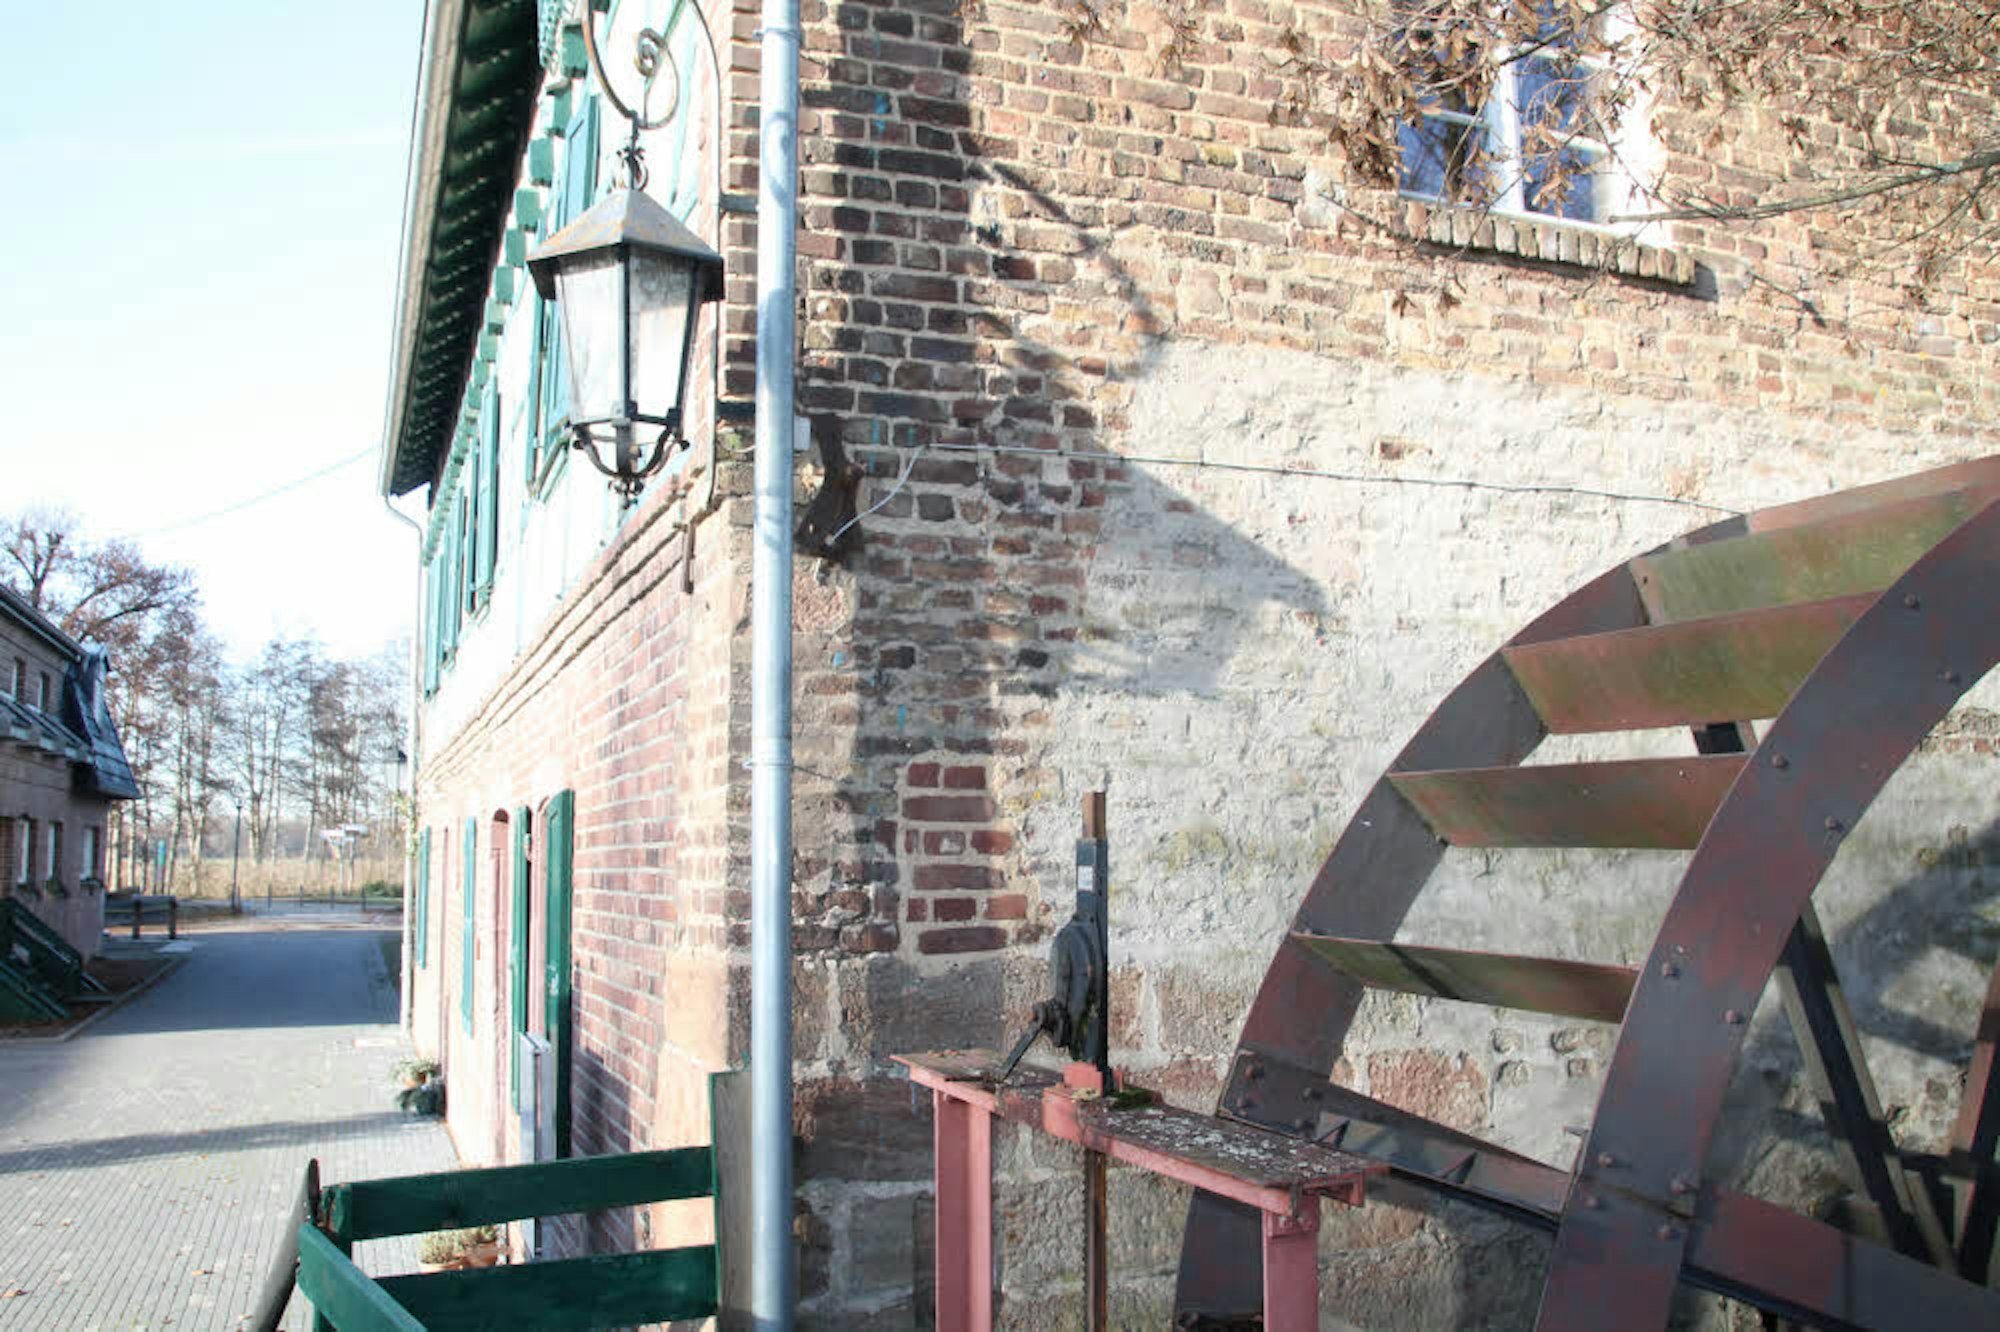 Das Mühlenhaus mit dem alten Mühlrad gehört zum Naturparkzentrum. Ringsherum gibt es Attraktionen für die Besucher.